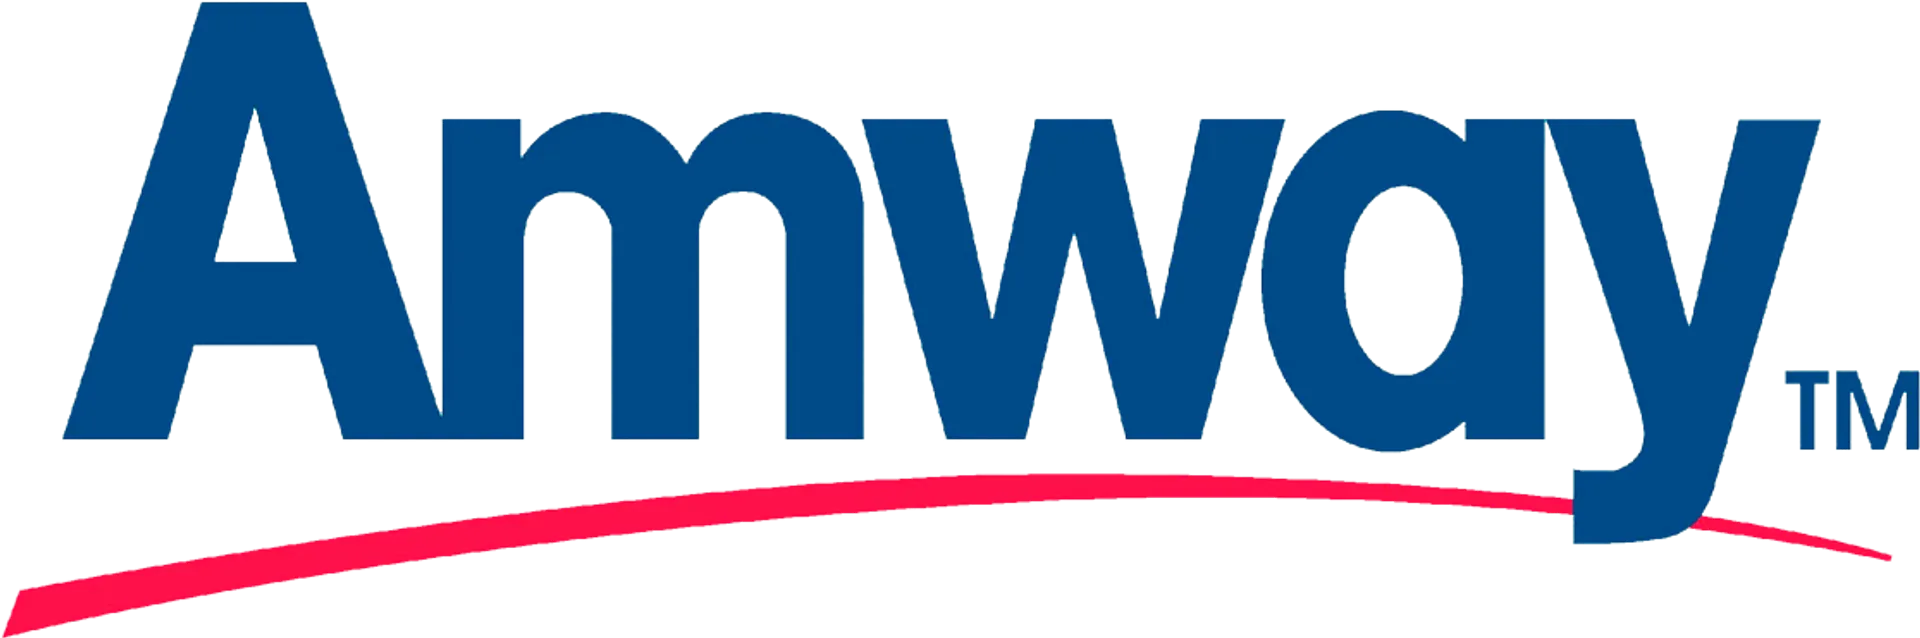 AMWAY logo